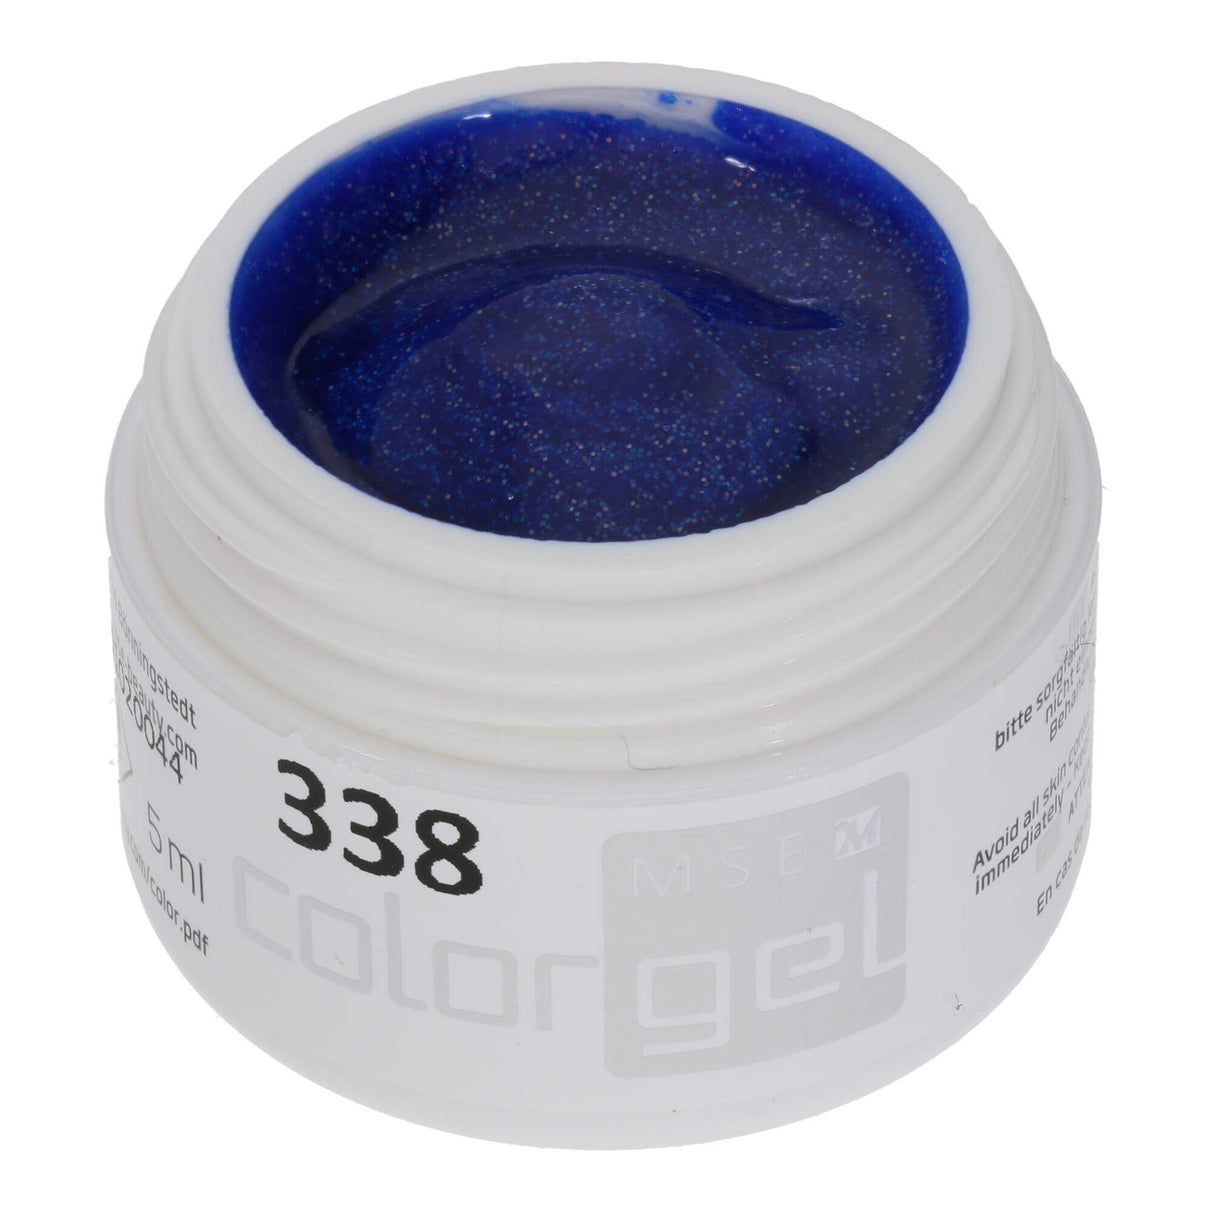 # 338 Premium GLITTER Color Gel 5ml Gel màu xanh hoàng gia với ánh kim lấp lánh màu xanh lá